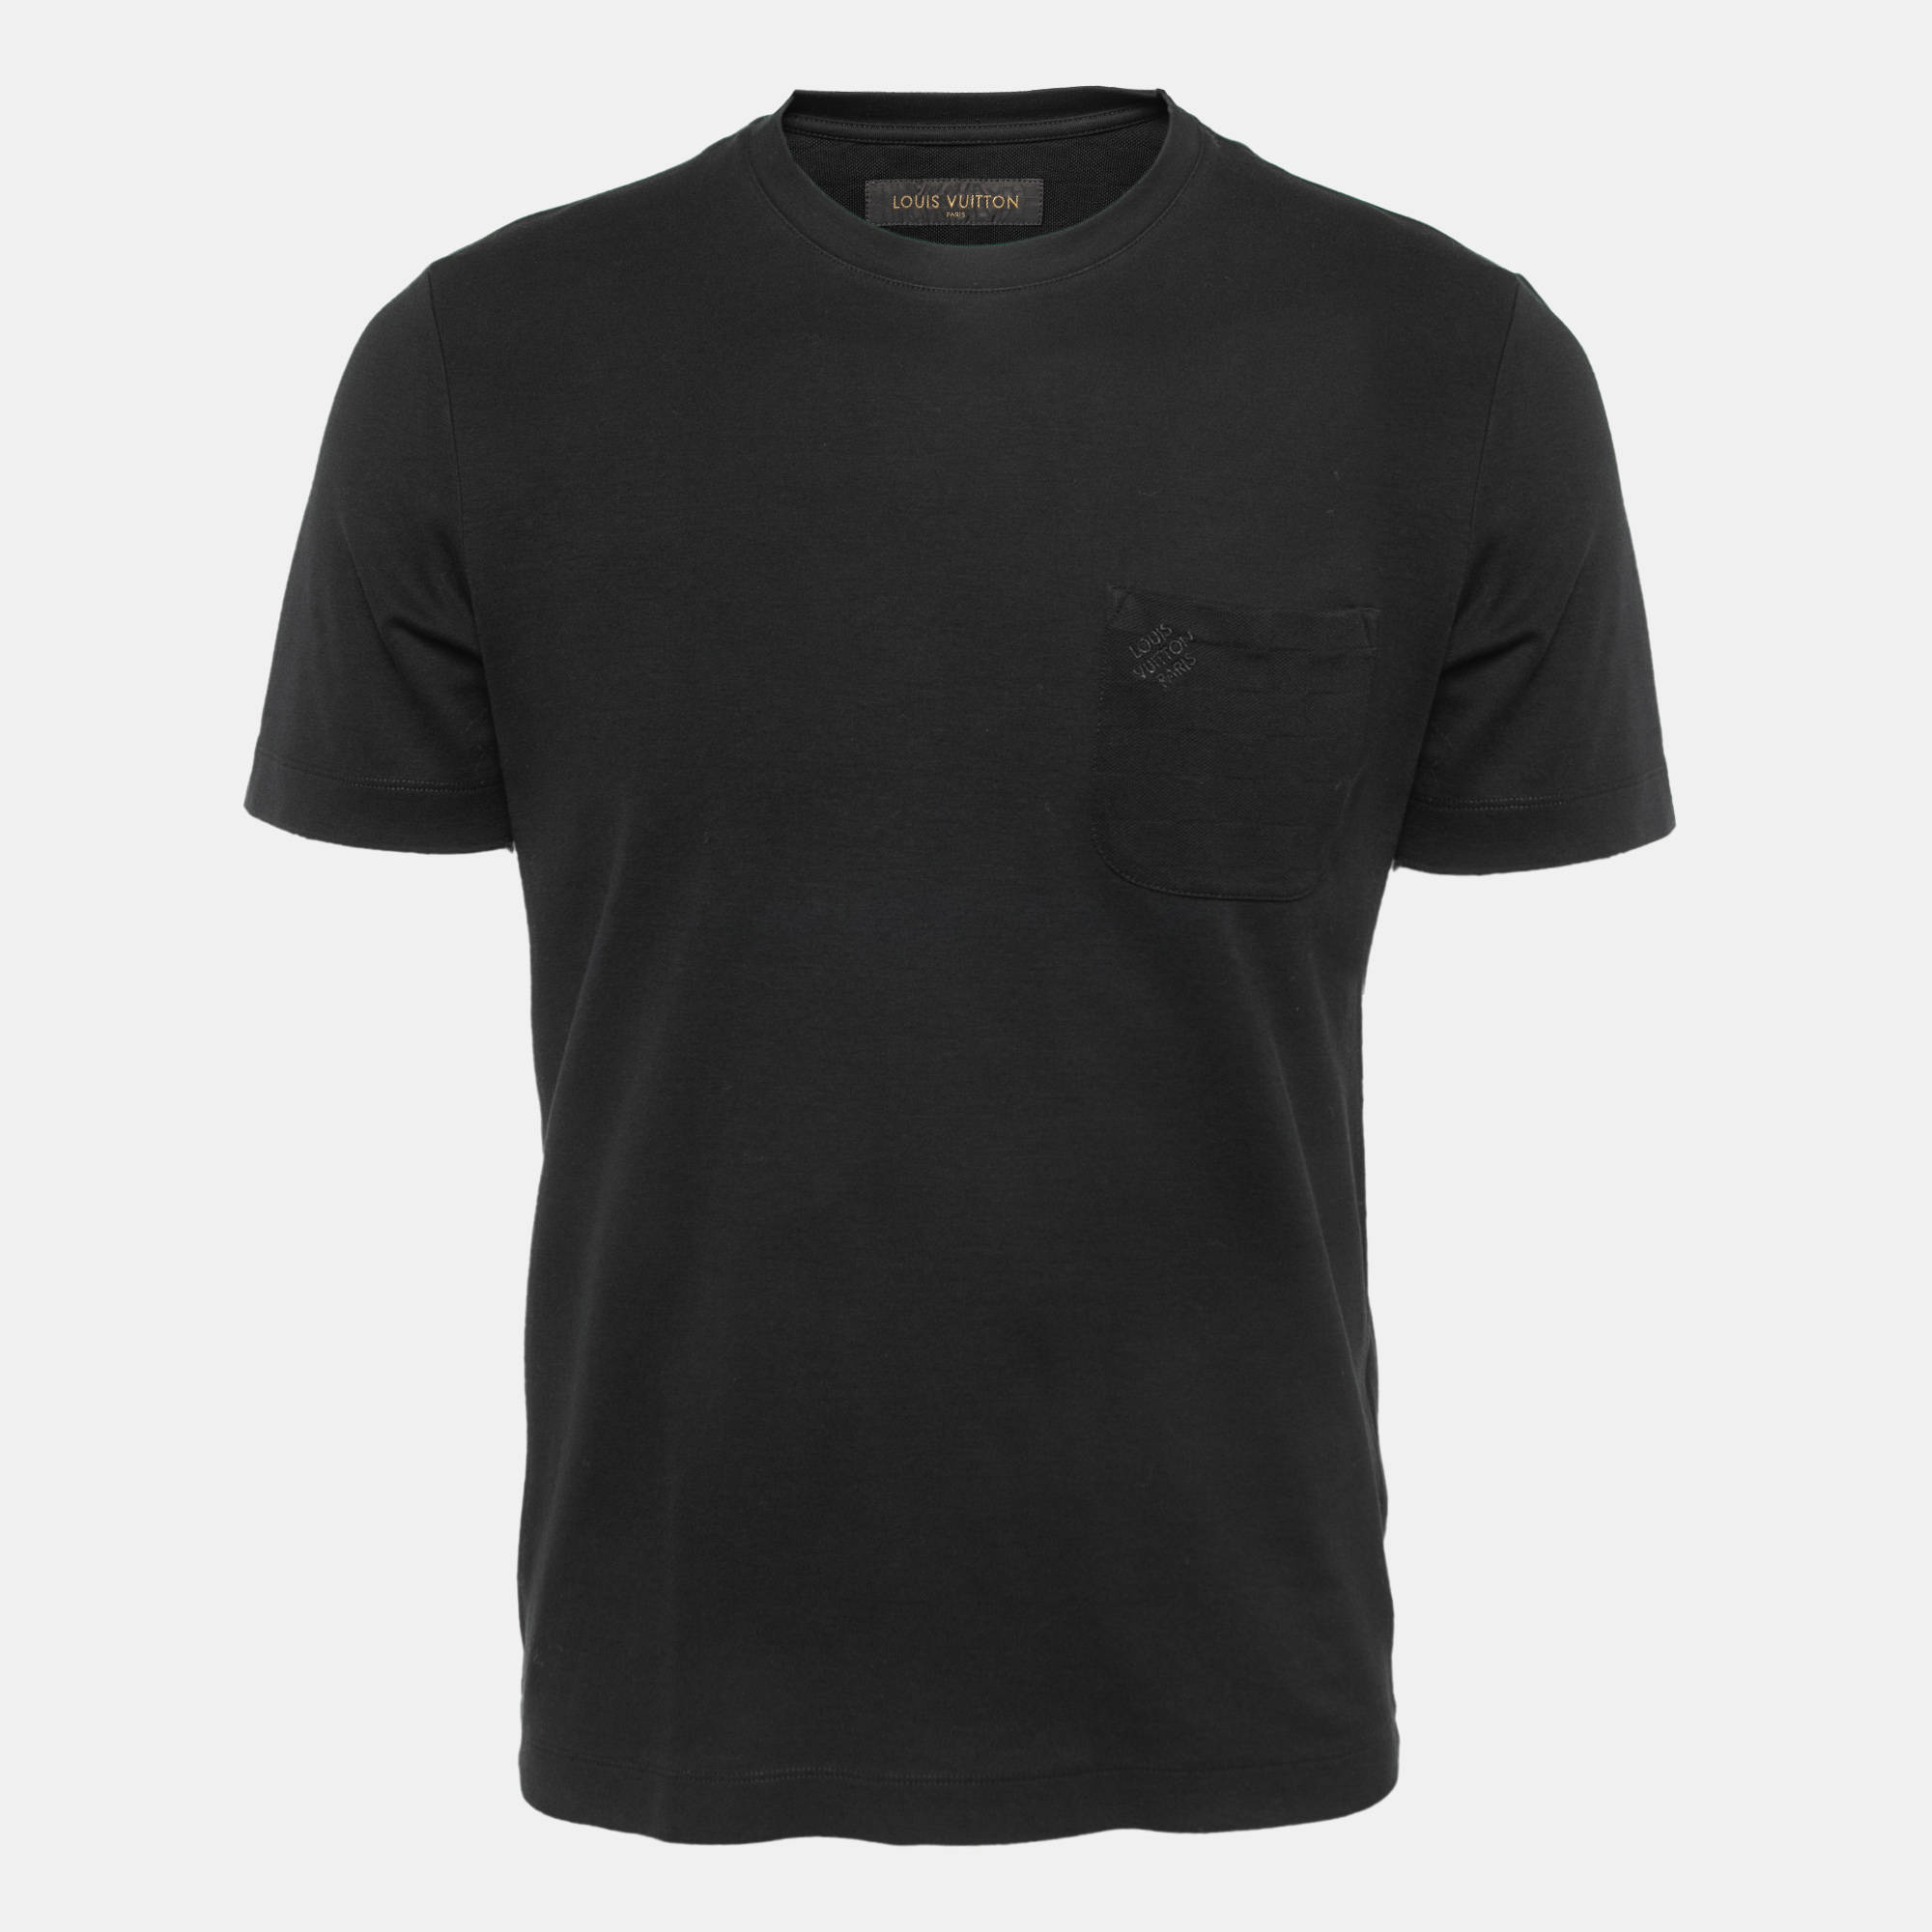 Louis Vuitton Mens T-Shirts, Black, S